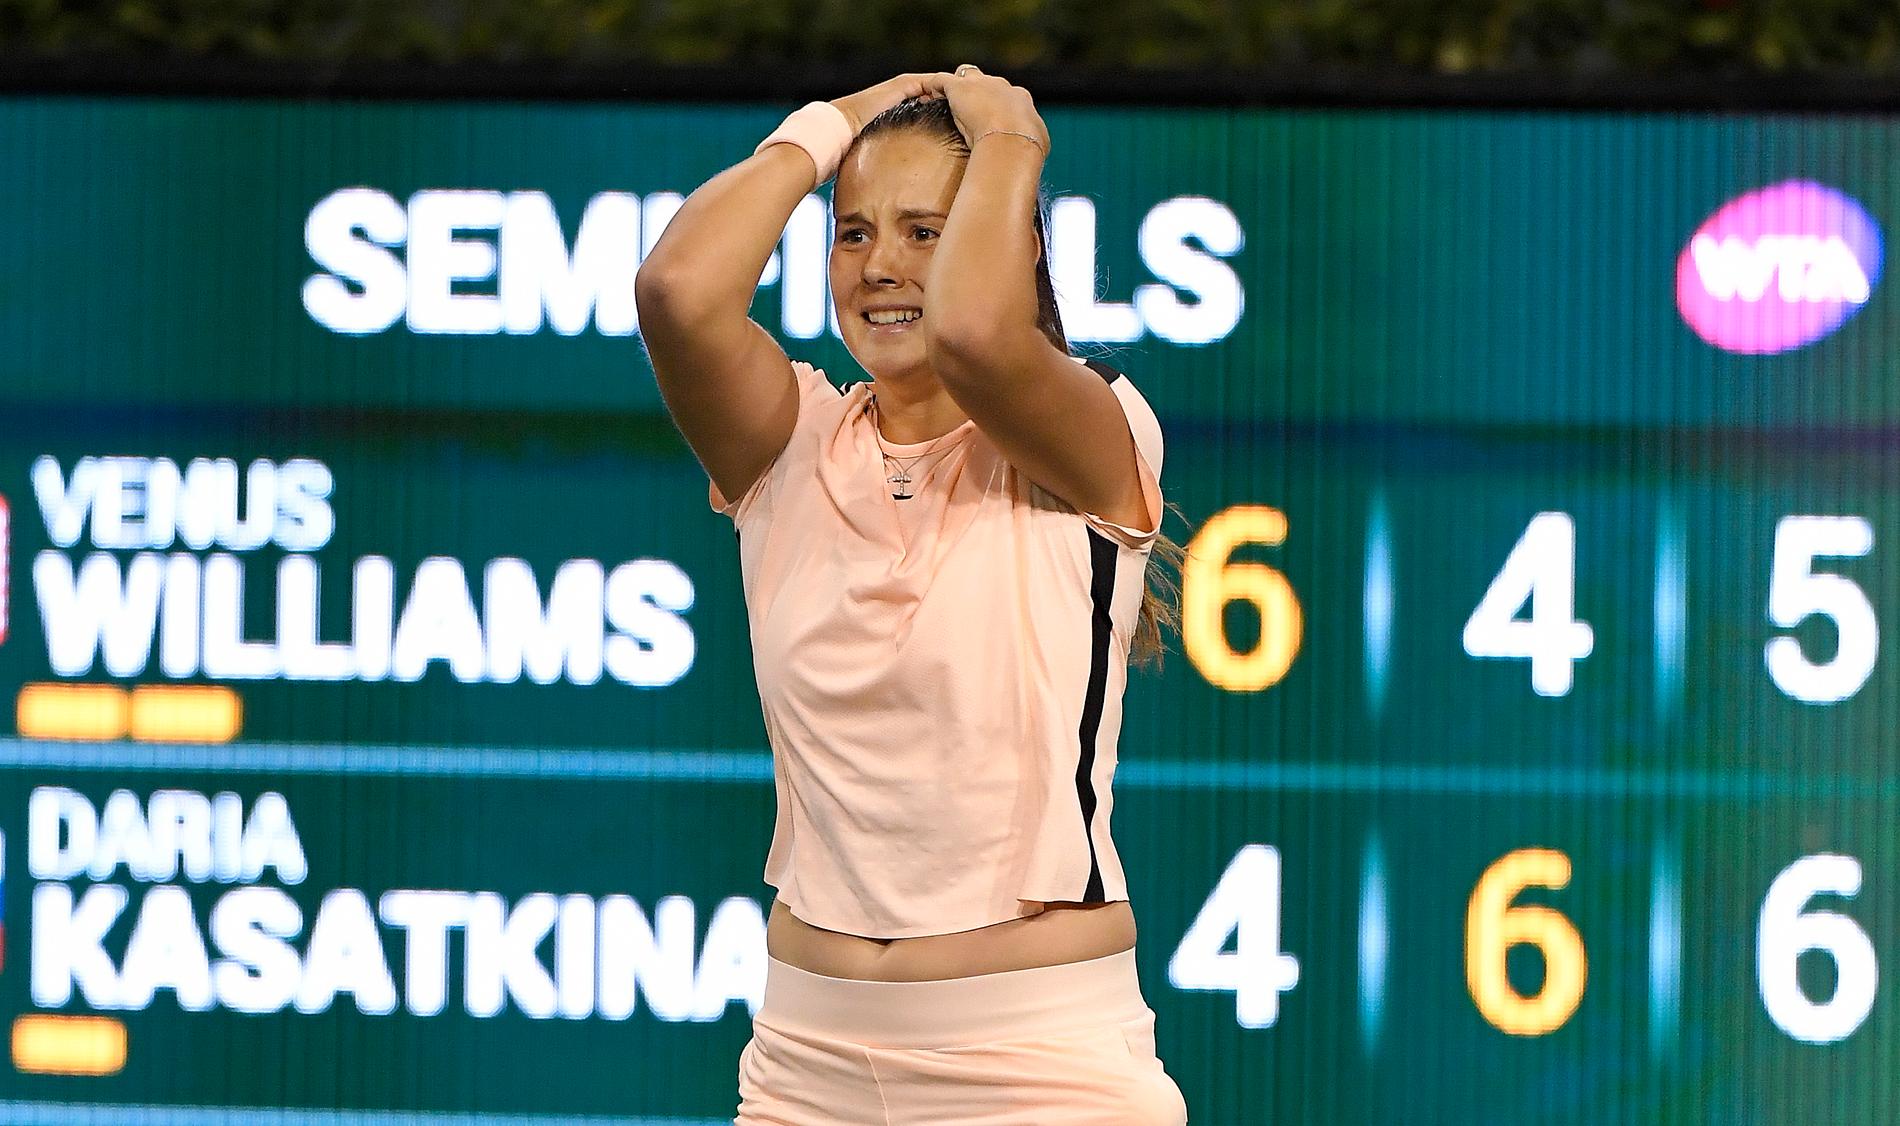 Darija Kasatkina kan inte tro att det är sant att hon slagit Venus Williams.